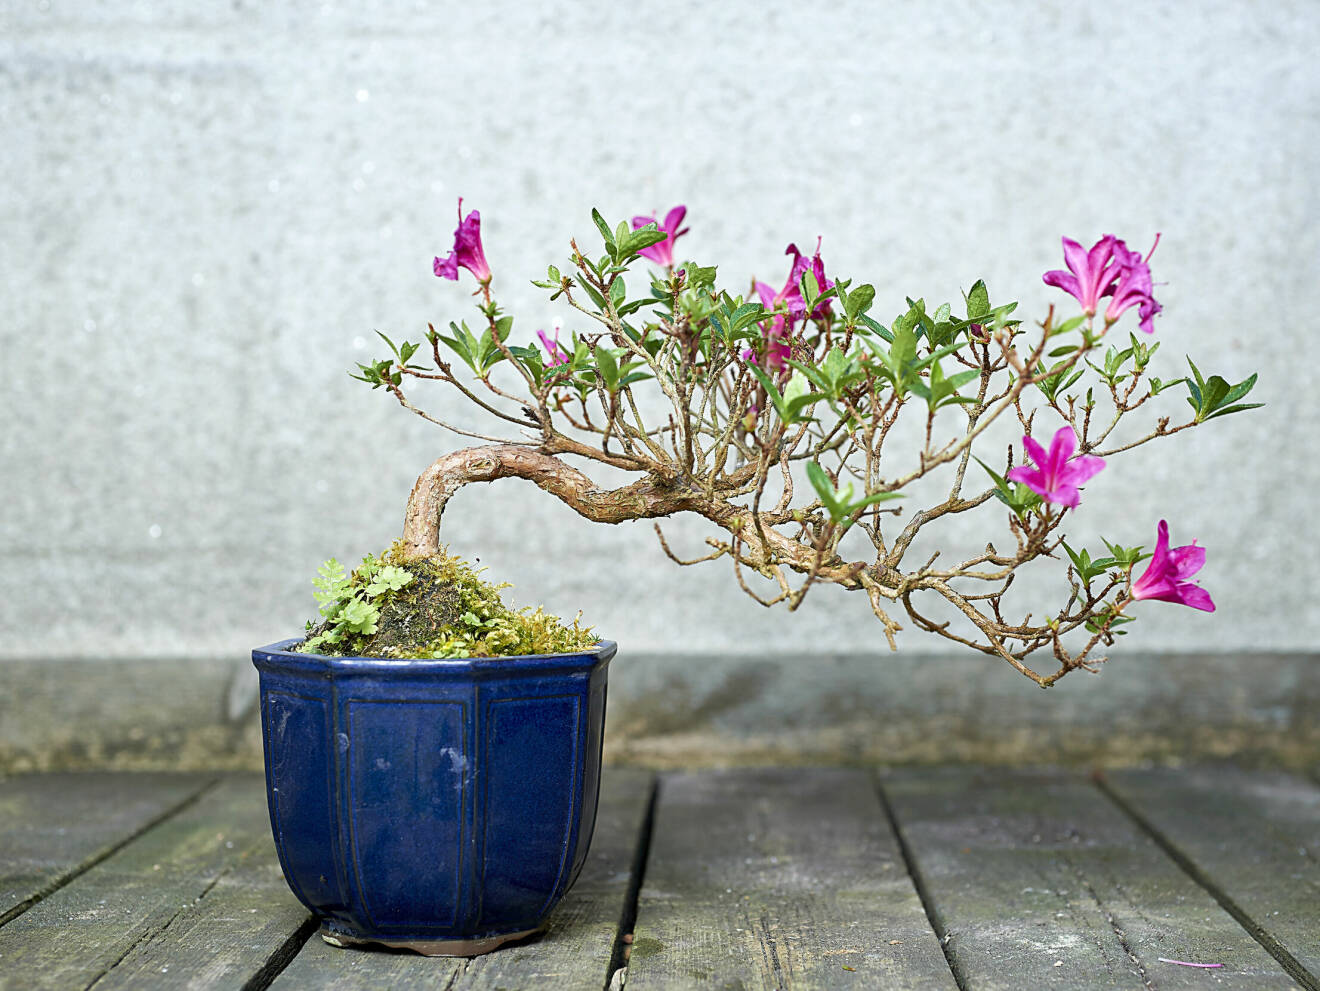 Halvkaskad kallas den här bonsaistilen. Azalean ser ut att växa över ett vattendrag.